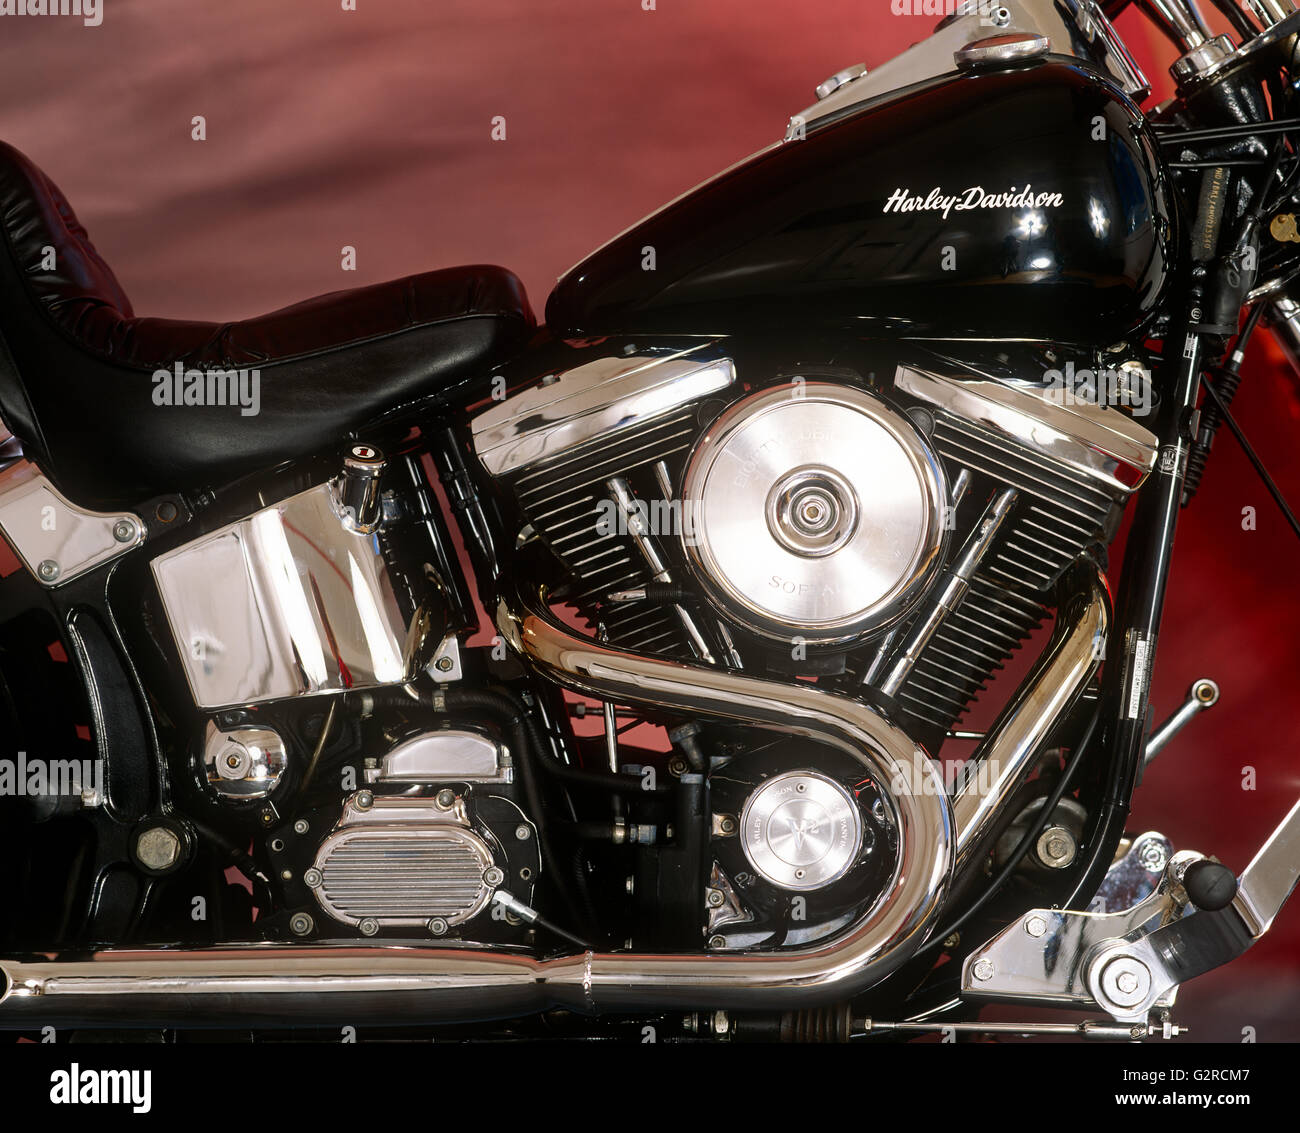 Harley Davidson in black Stock Photo